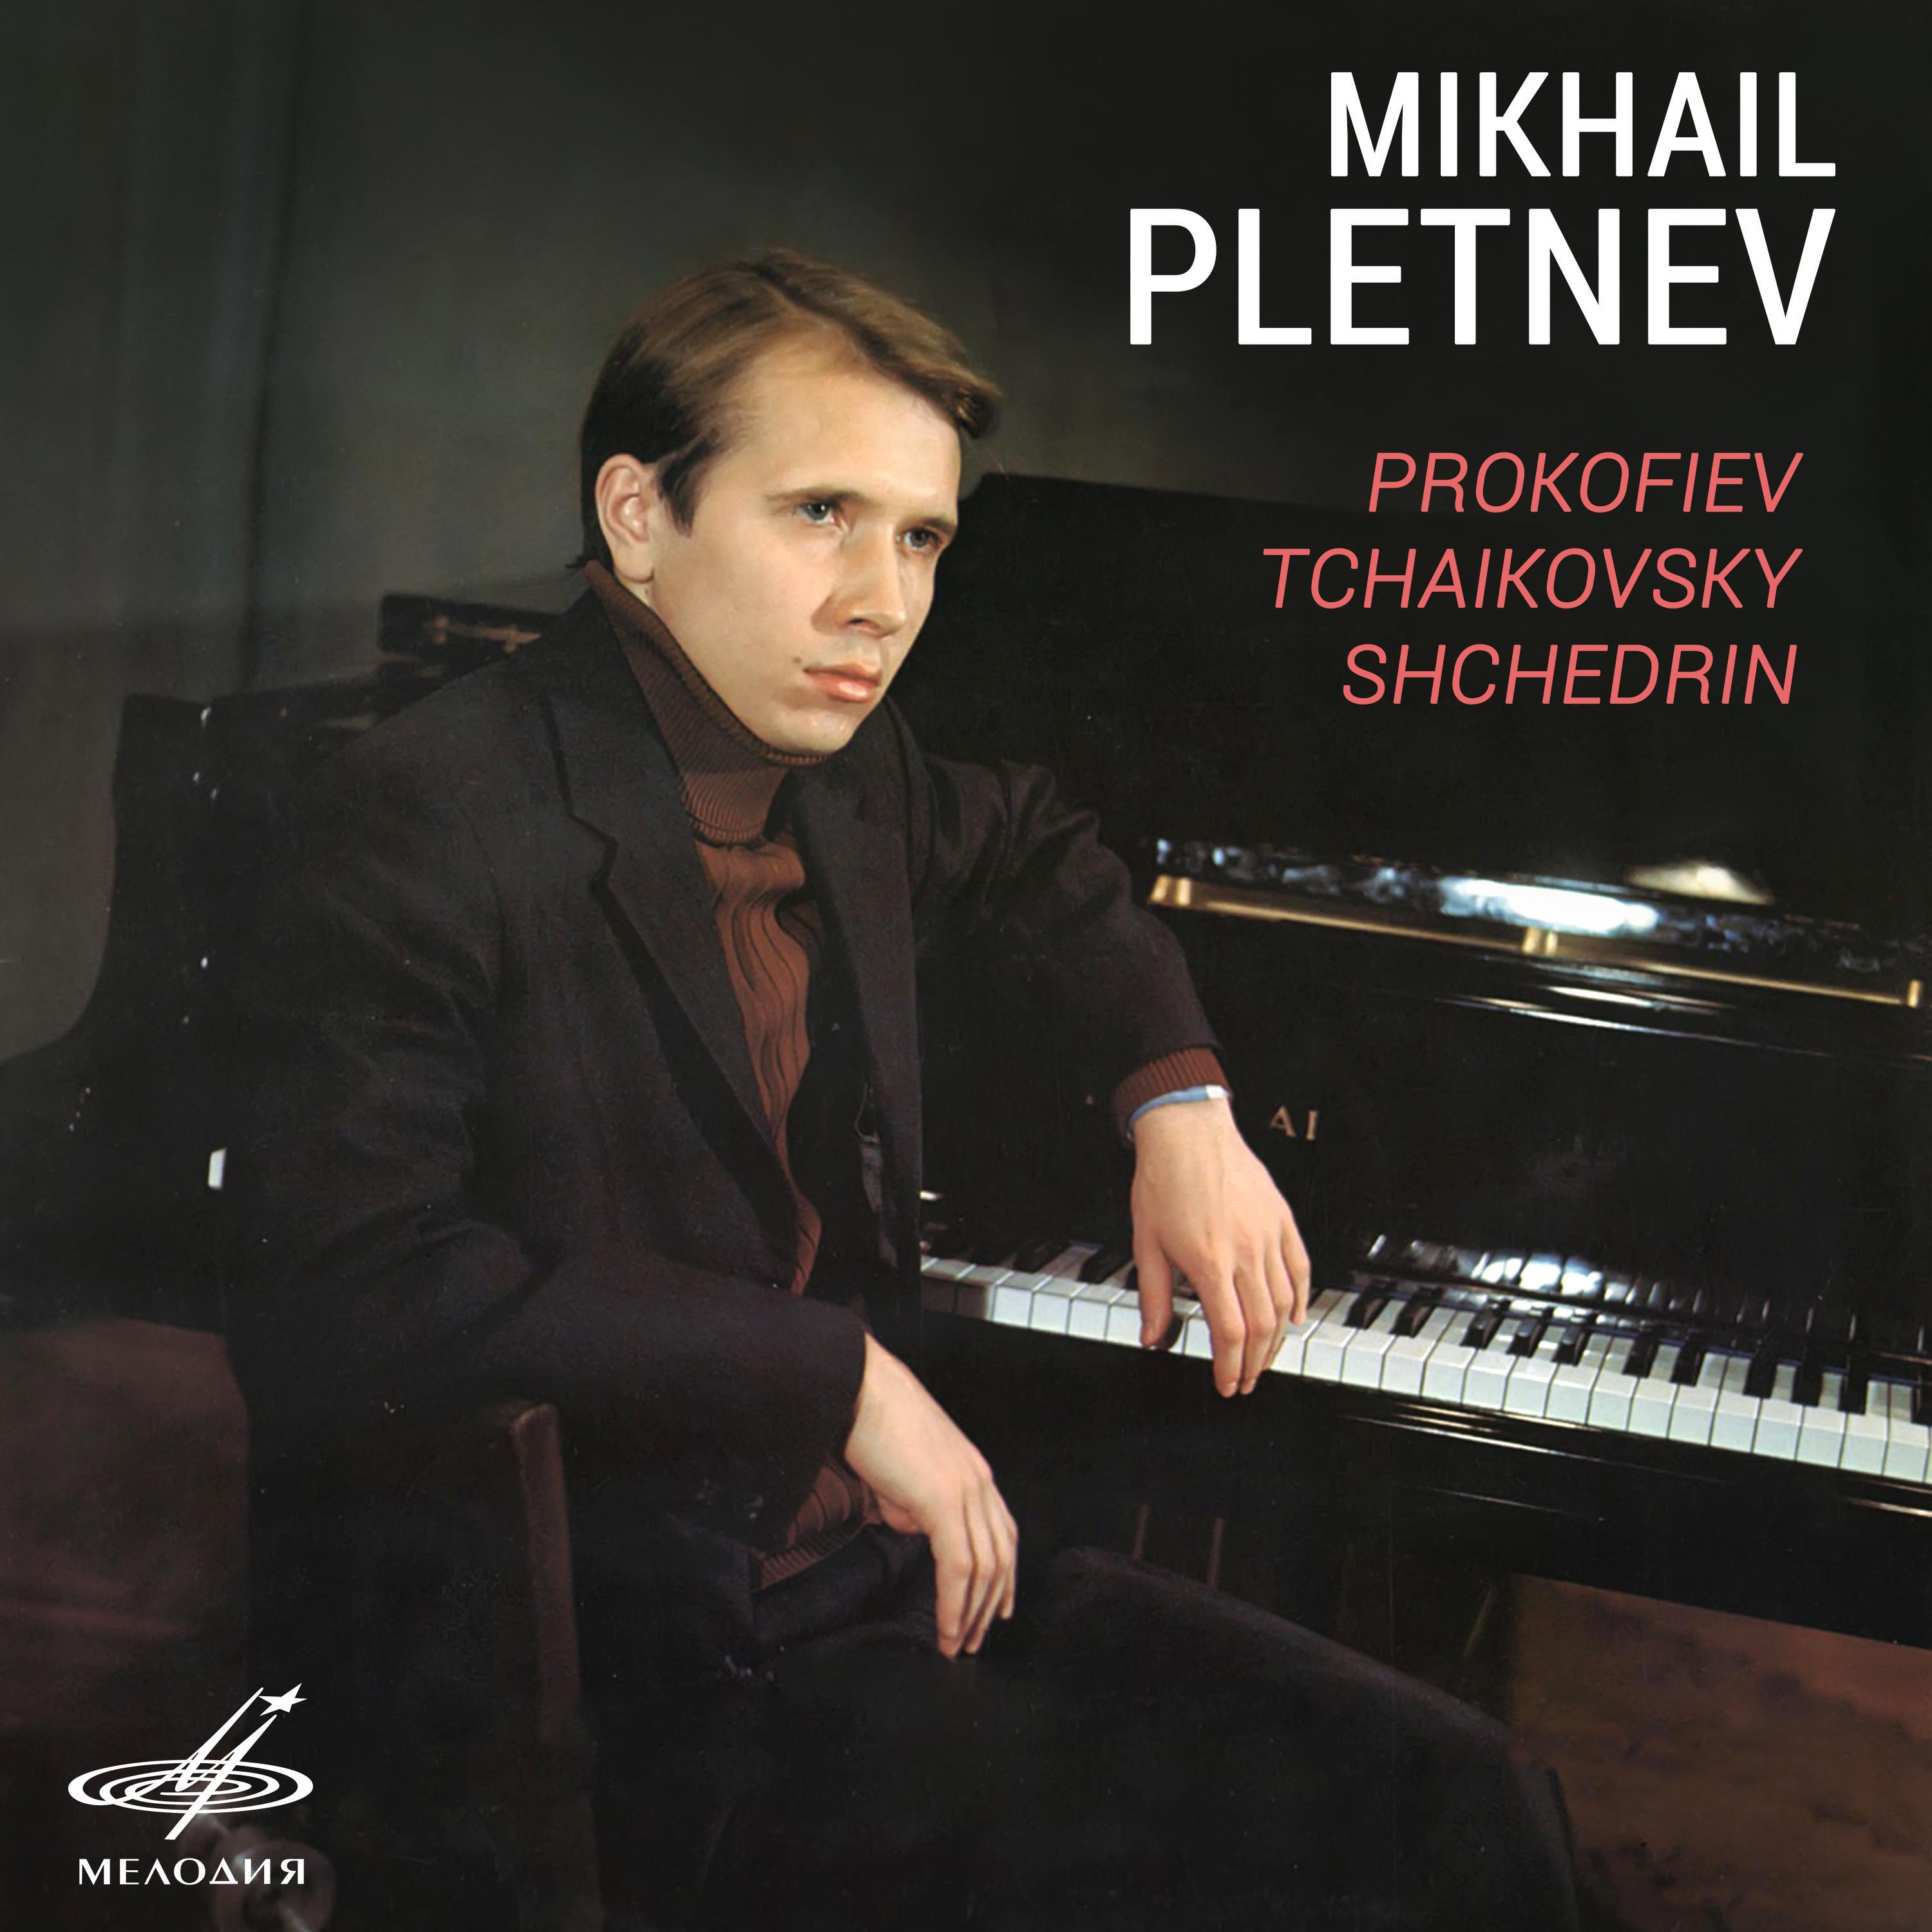 Prokofiev, Tchaikovsky, Shchedrin